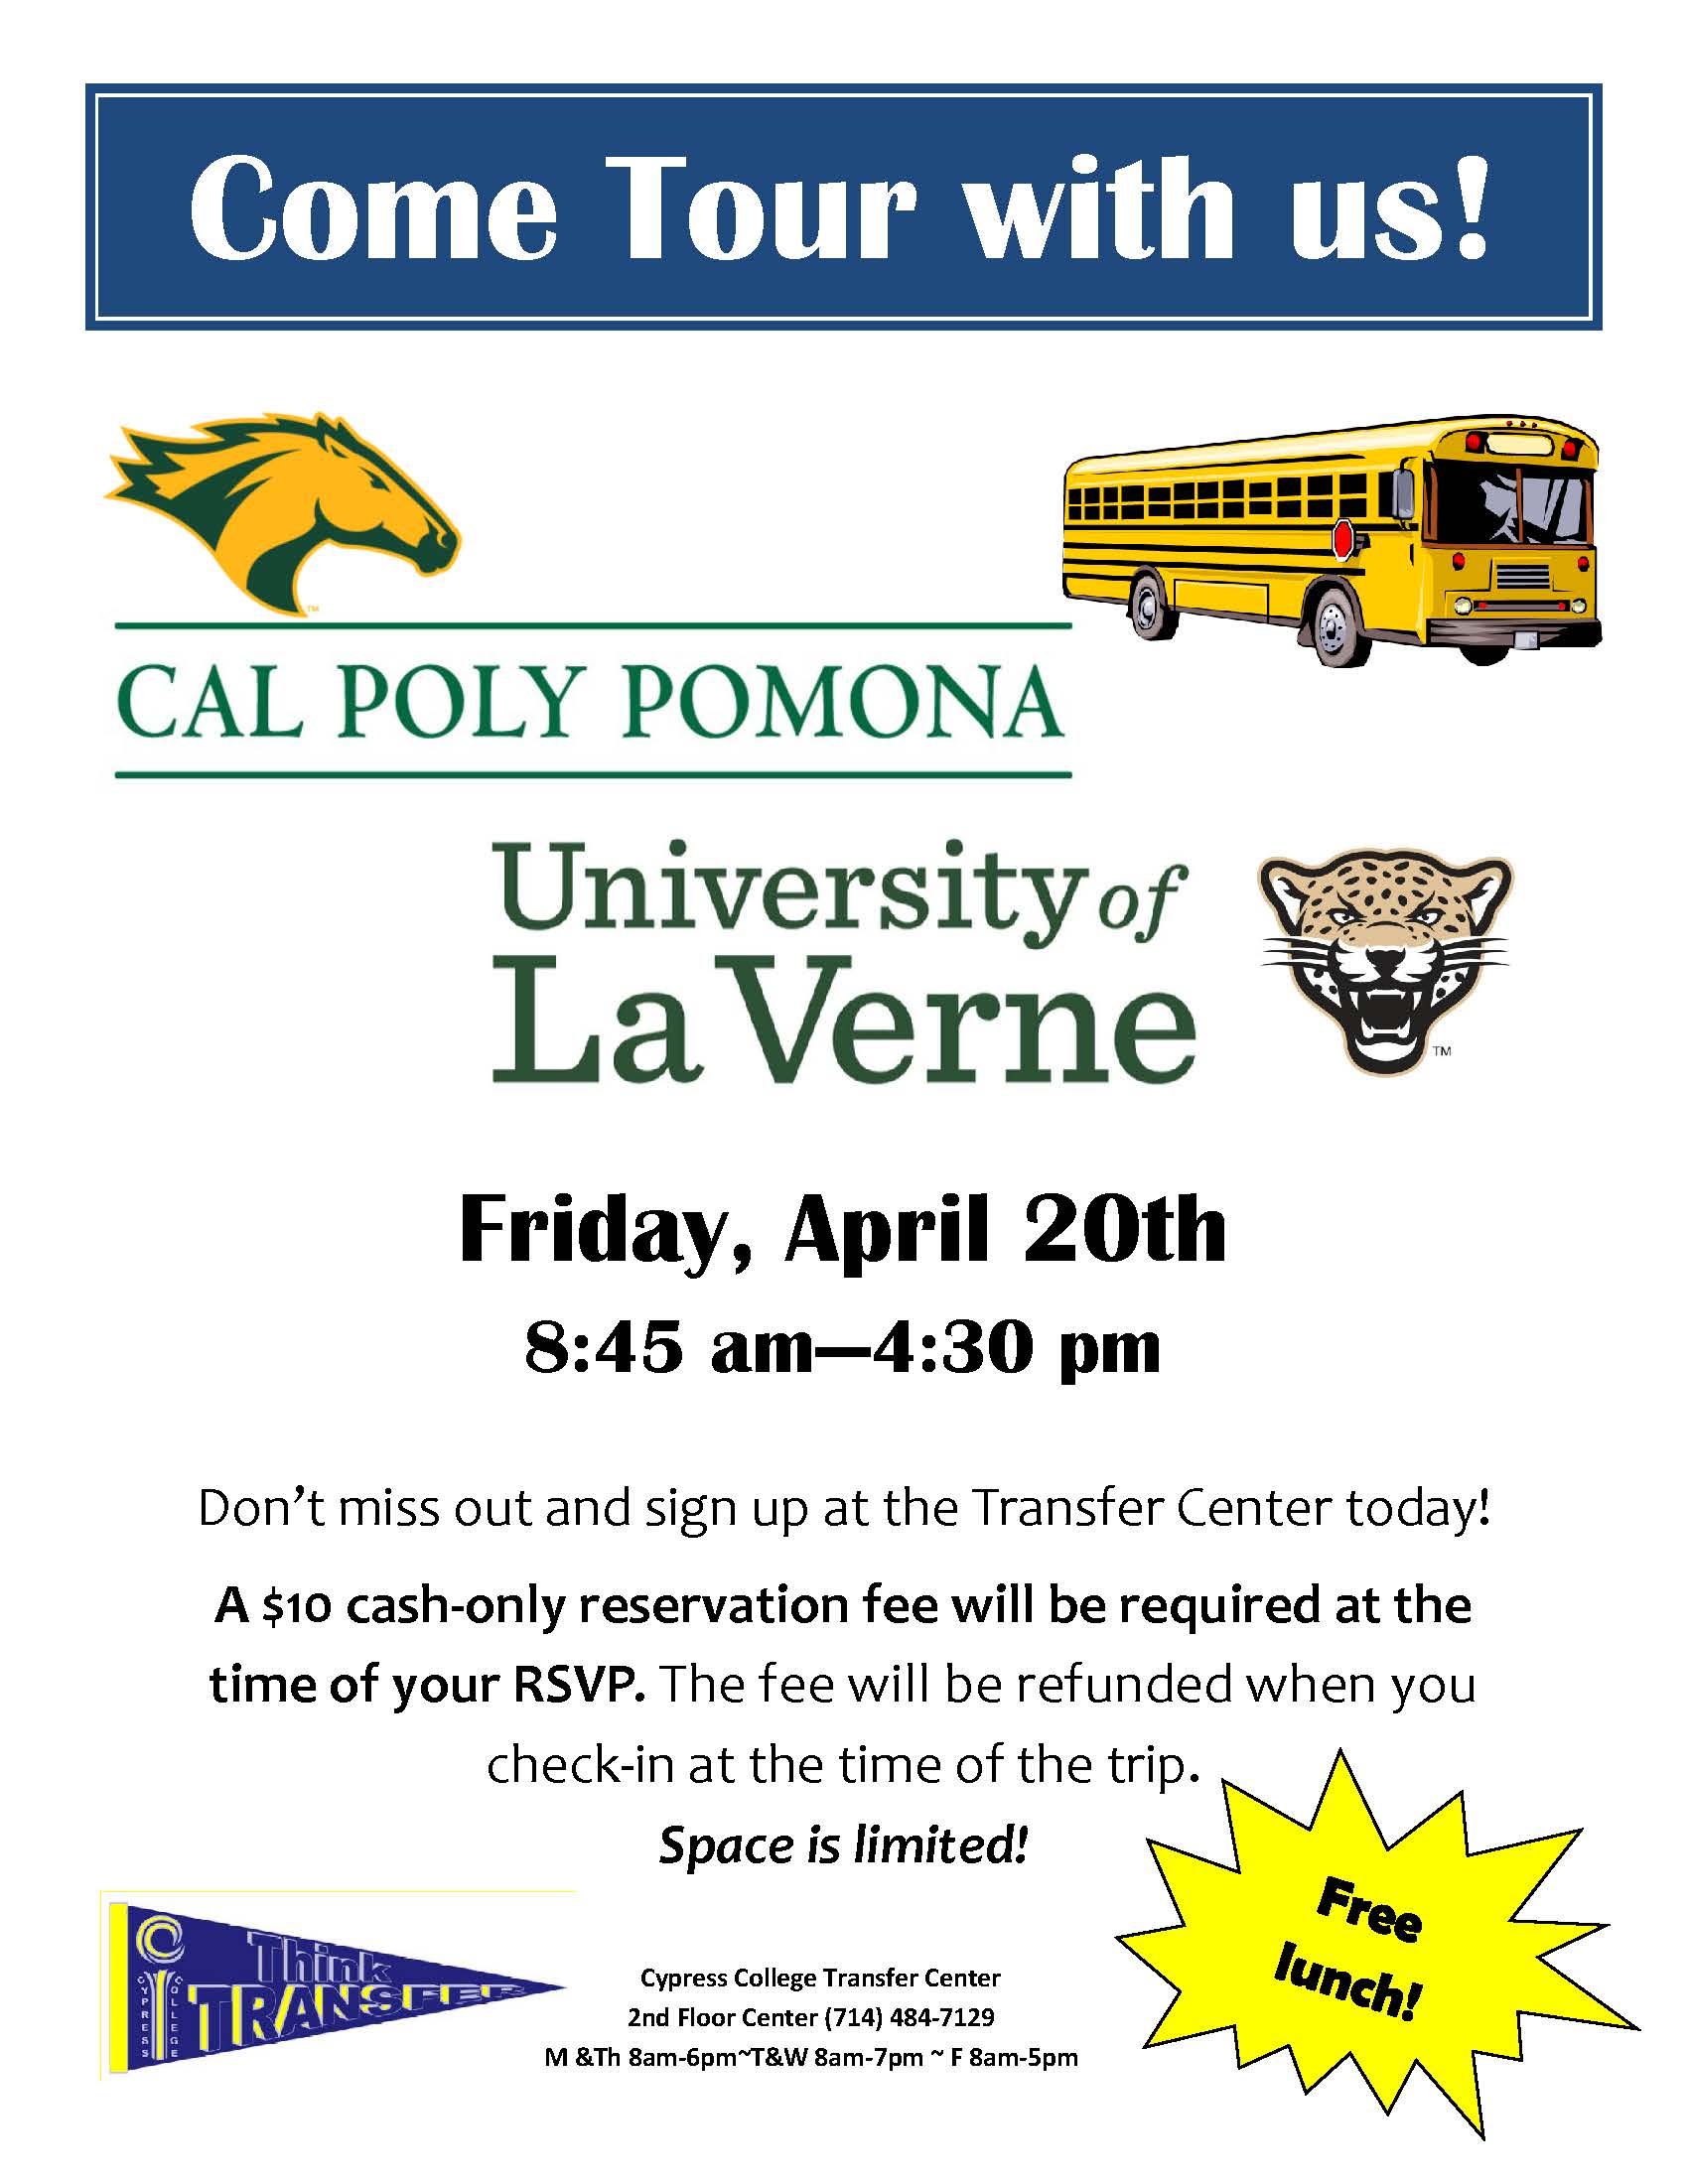 Bus tour to Cal Poly Pomona flyer